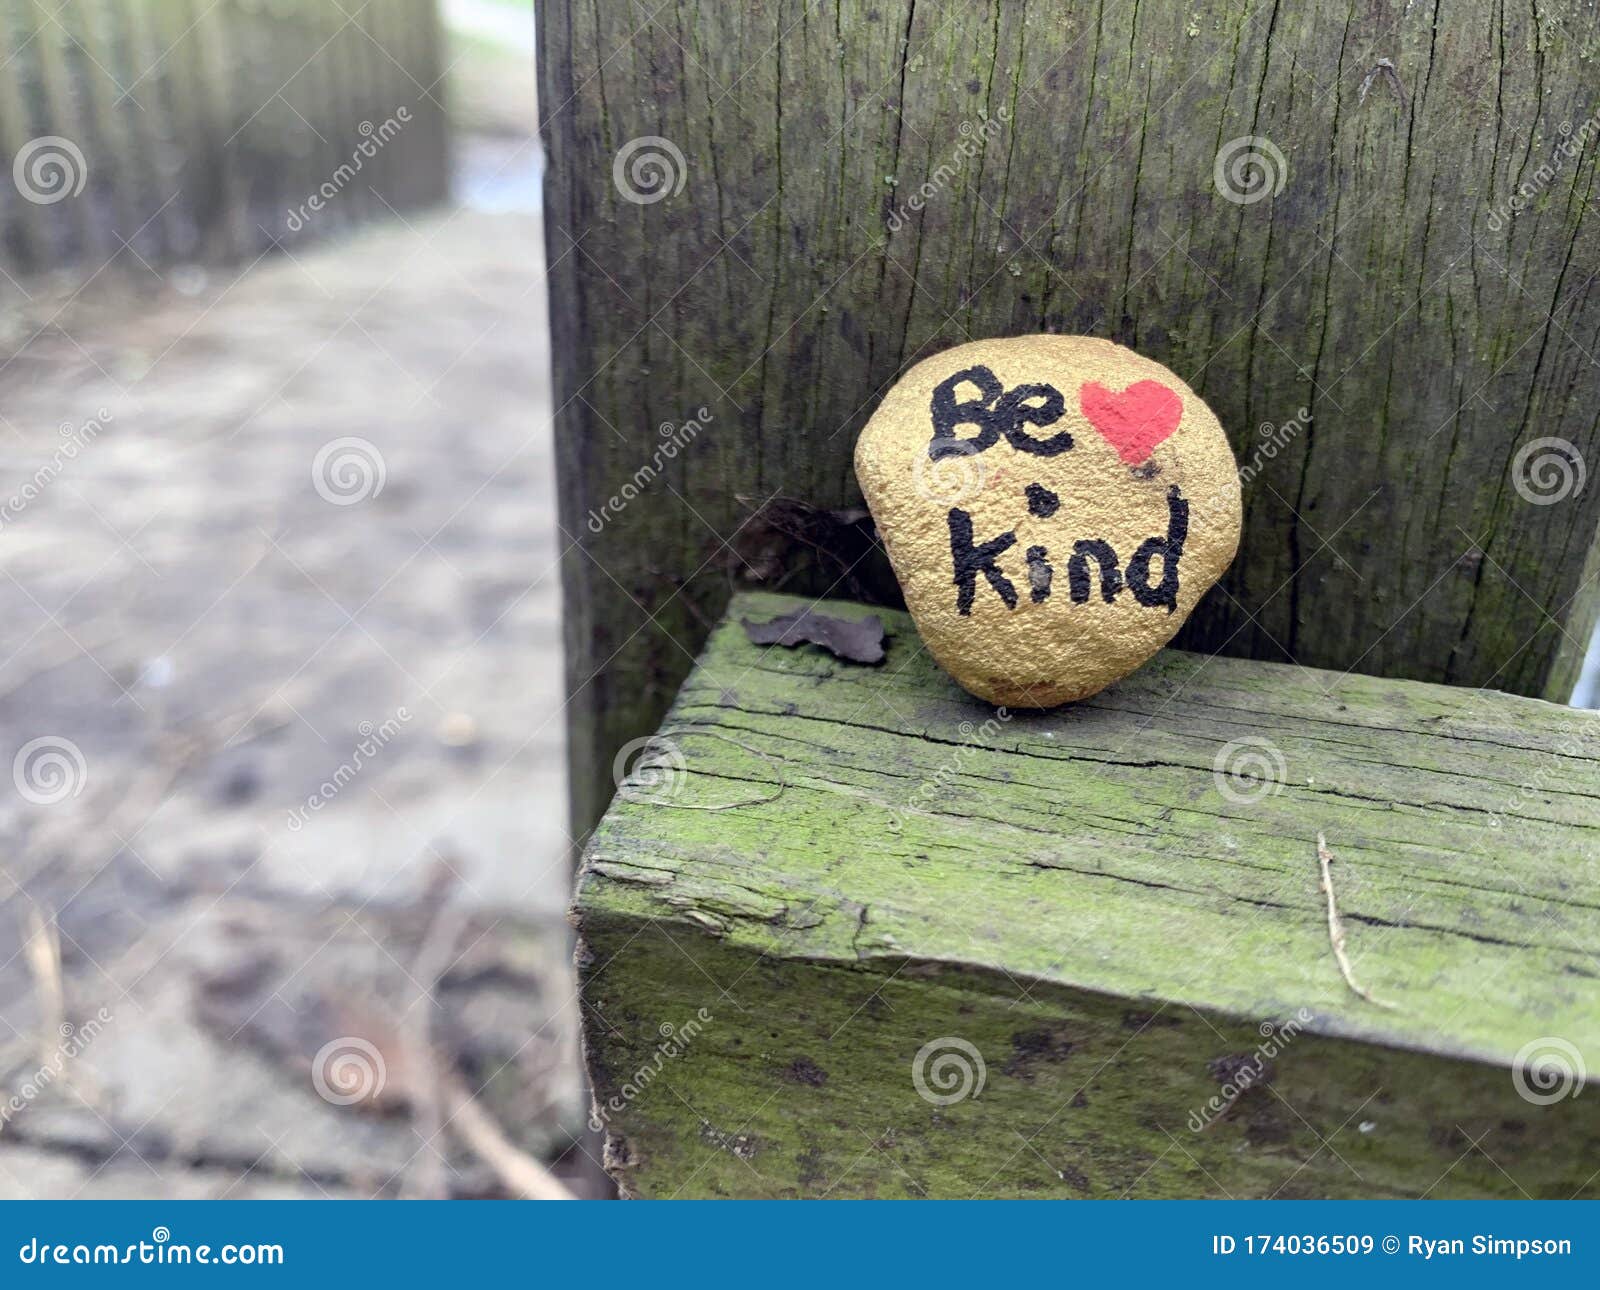  bekind be kind landscape